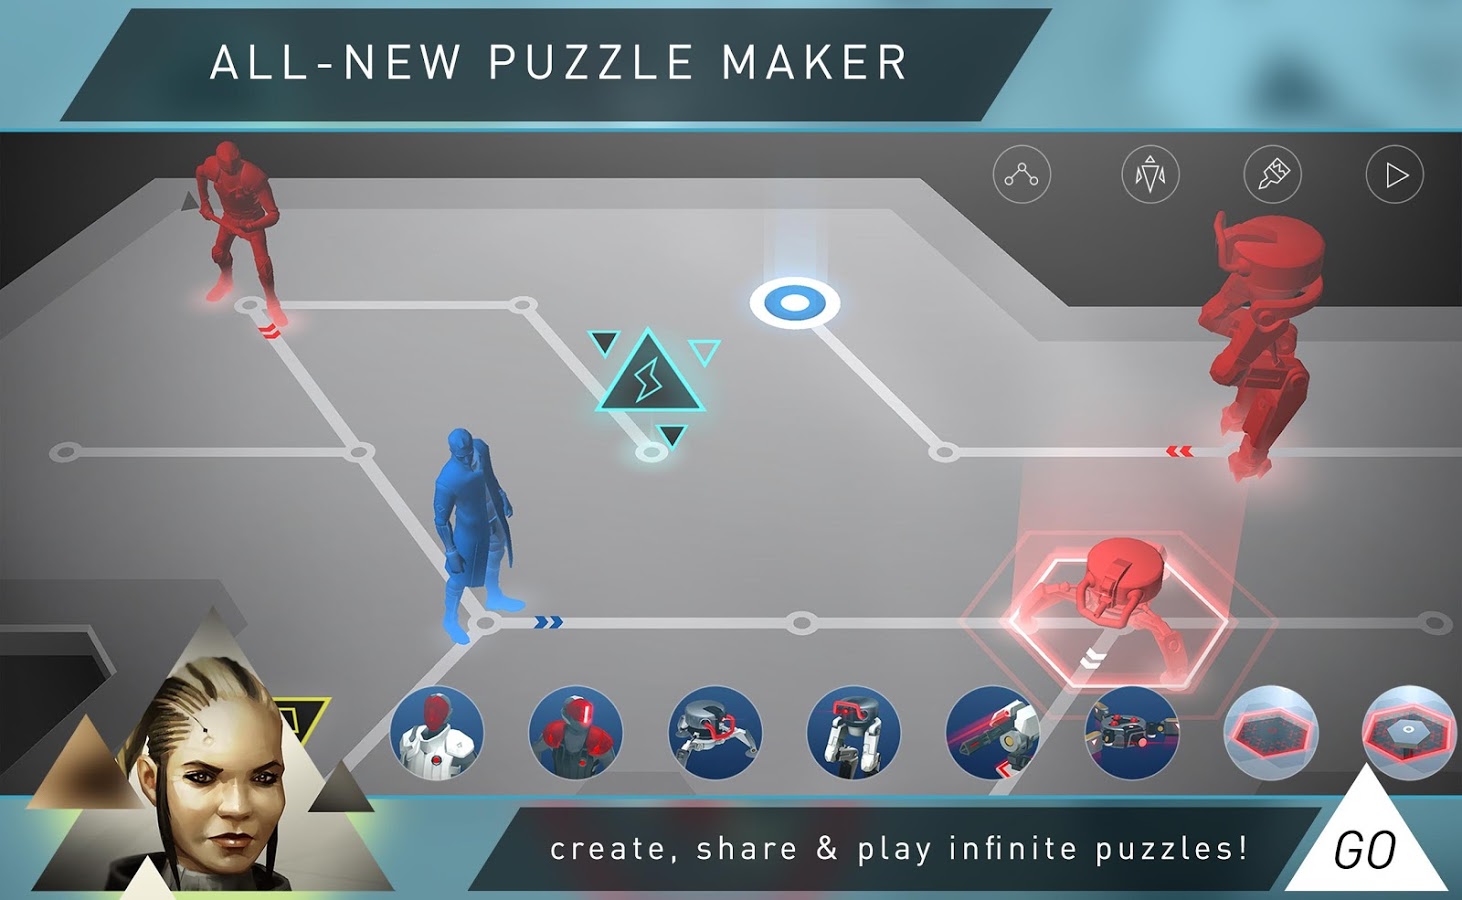 Deus Ex GO - Puzzle Challenge (Mod Hints)